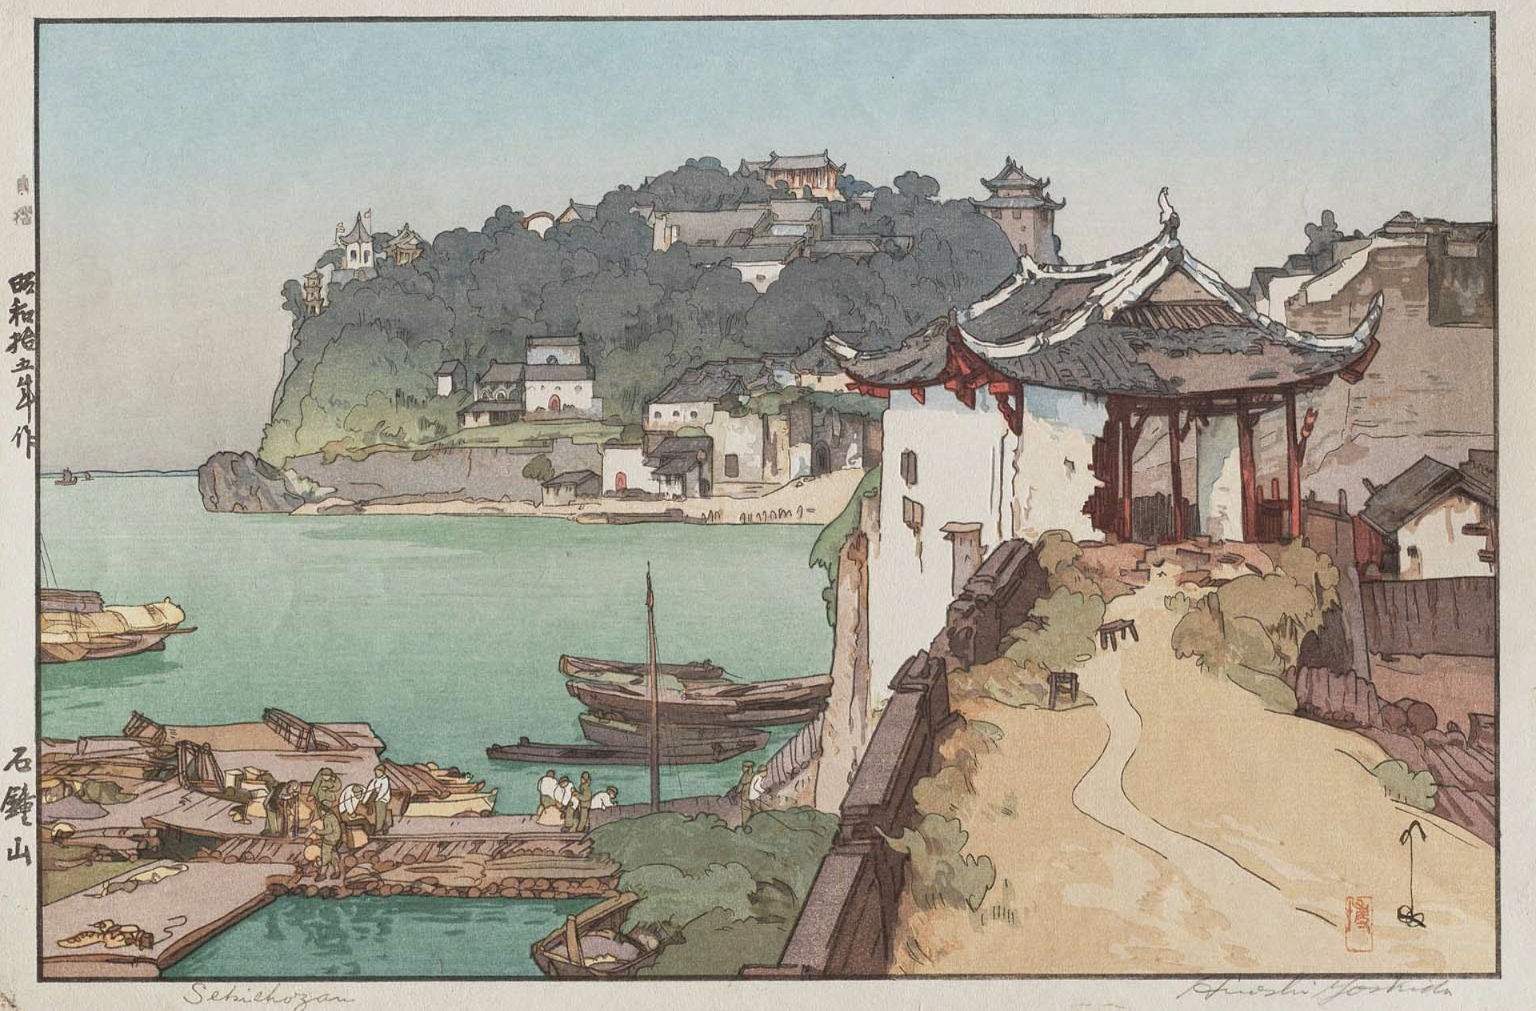 Hiroshi Yoshida “Sekishozan” 1940 woodblock print